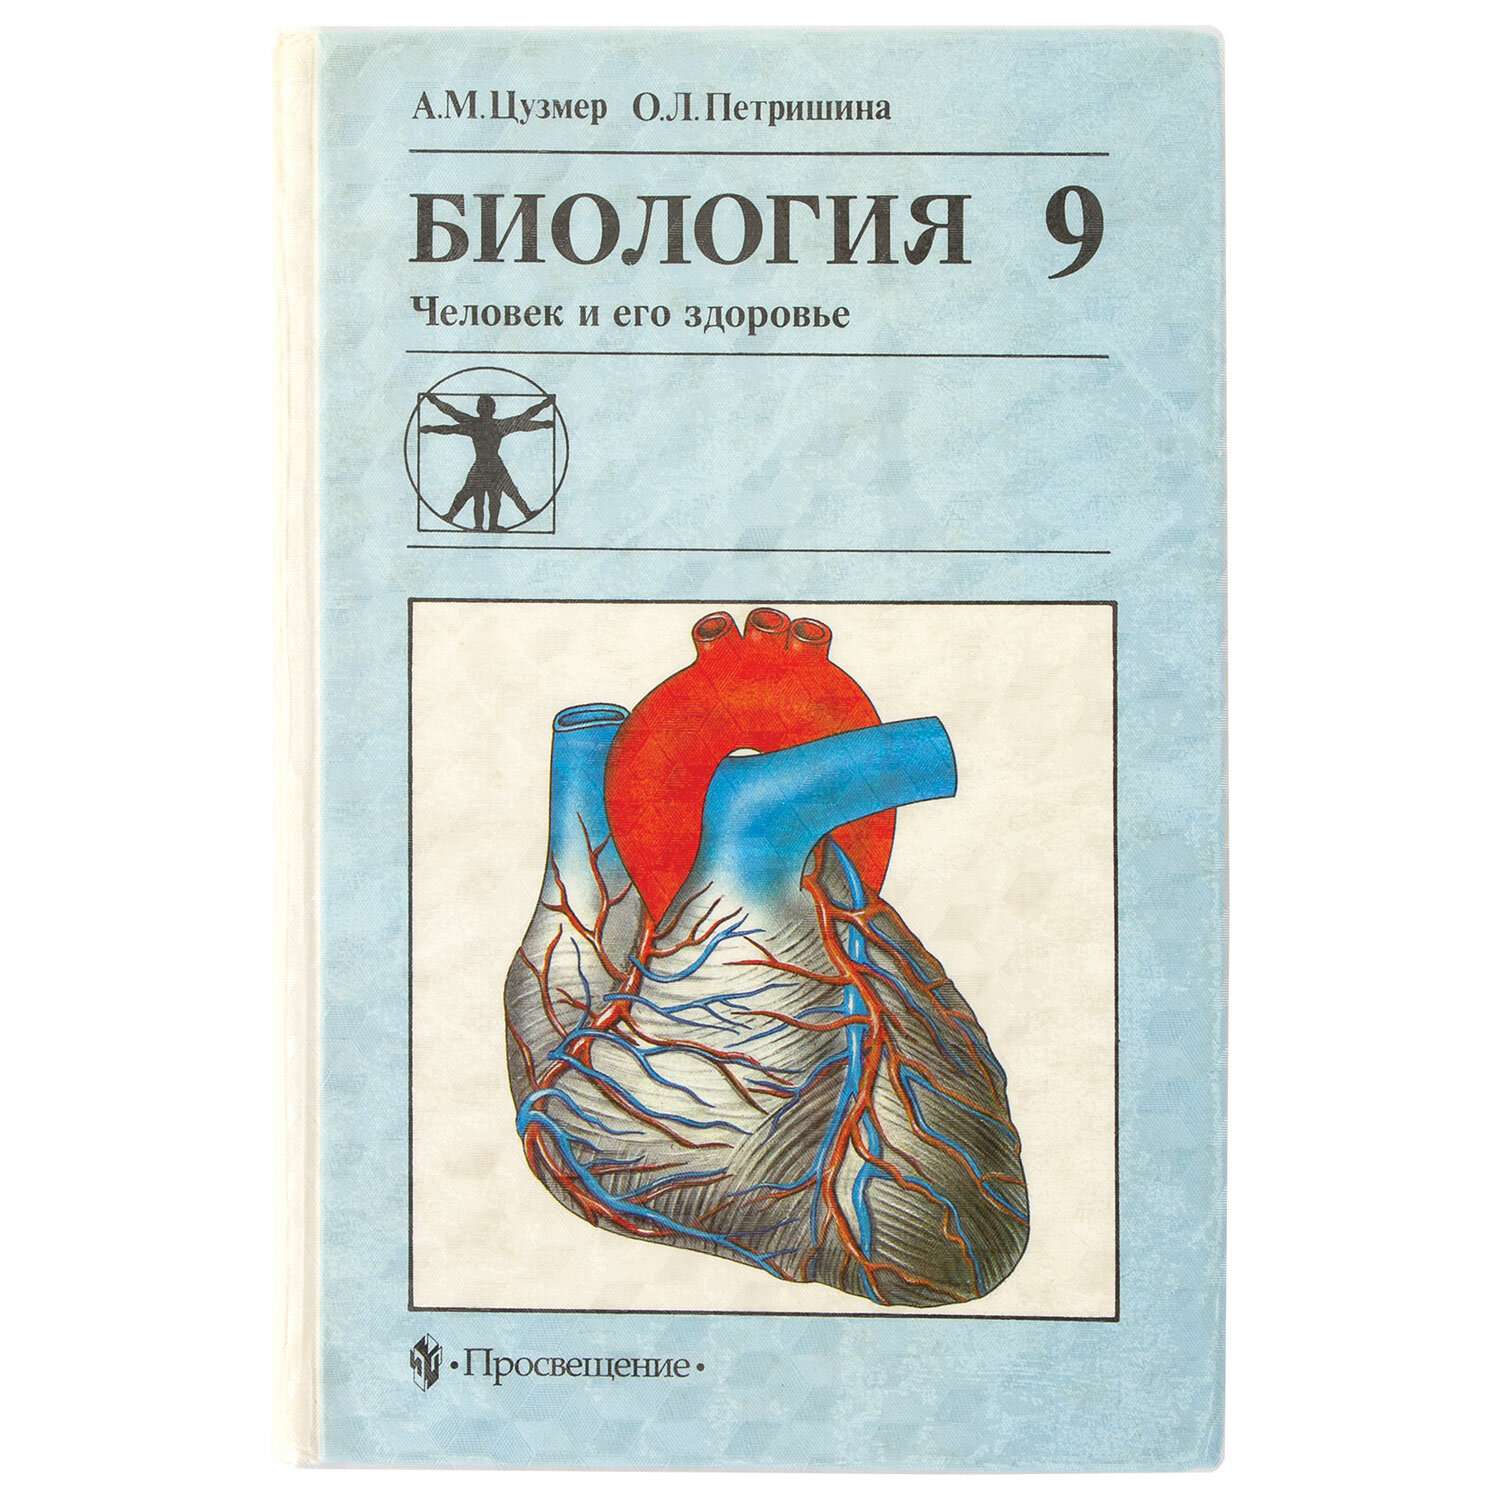 Обложка Пифагор пленка для учебников и книг самоклеящаяся фактурная рулон 33х100 см - фото 8